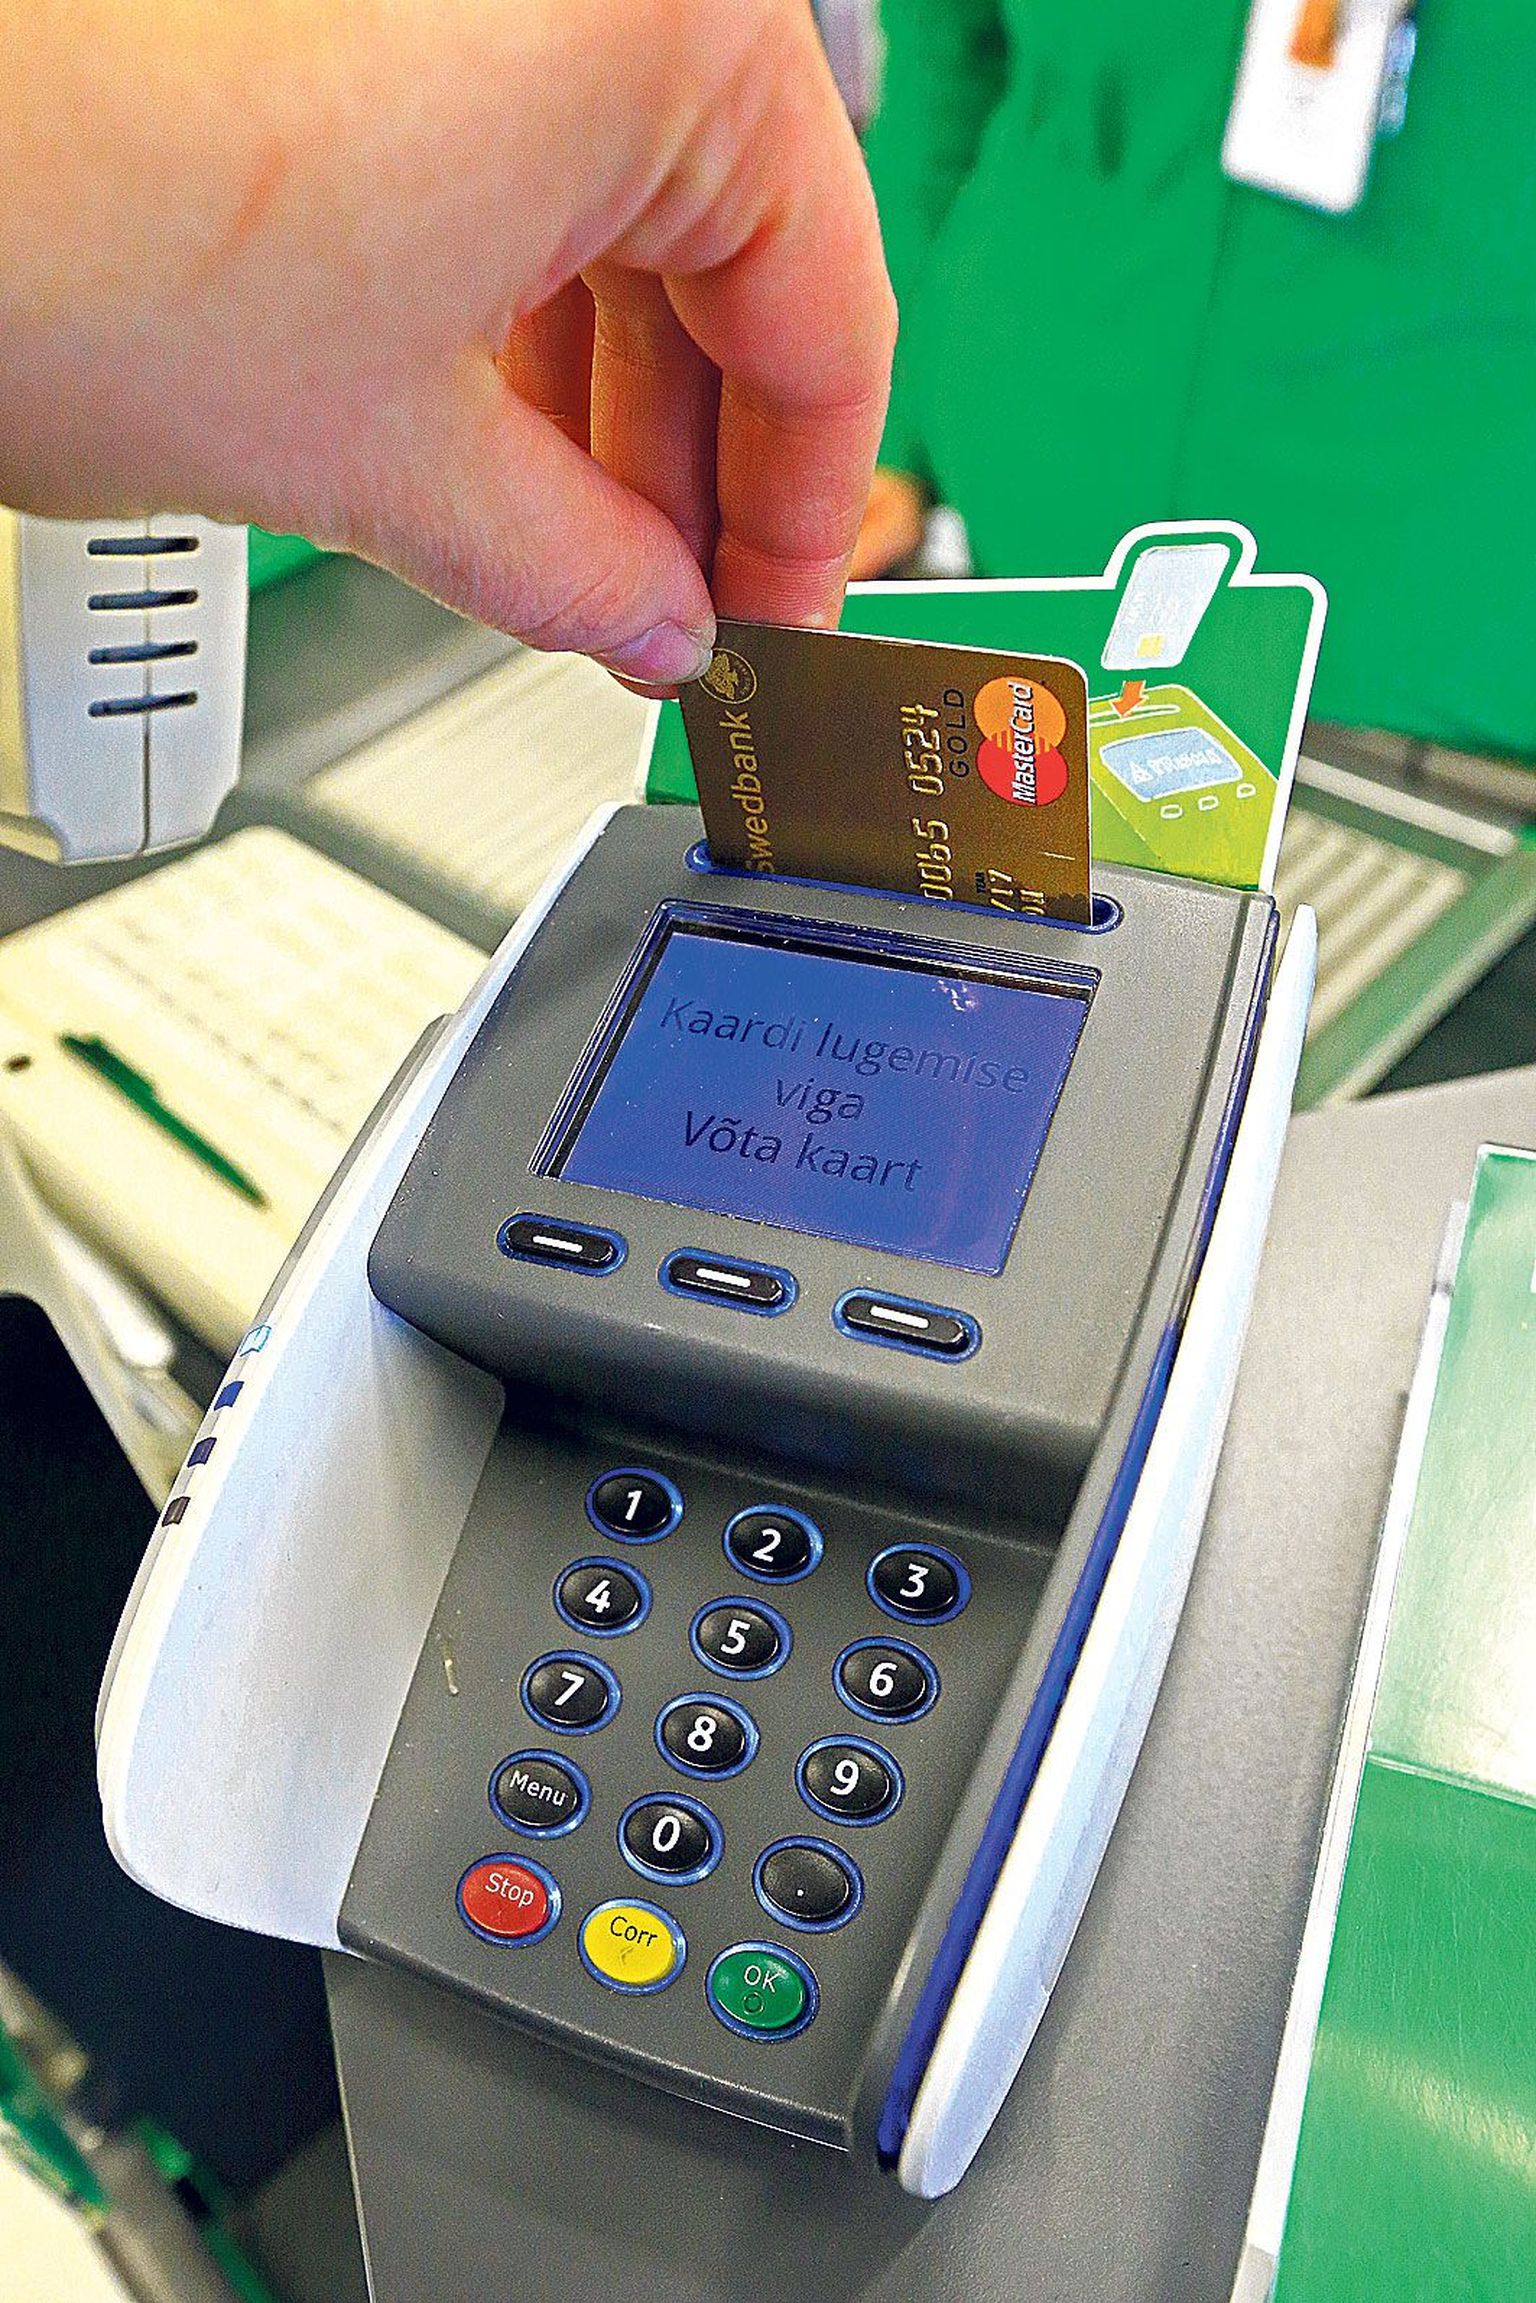 В старых терминалах в магазине Prisma новые, тонкие банковские карты могут не сработать, поскольку клеммы считывателя иногда из-за большой нагрузки деформируются.